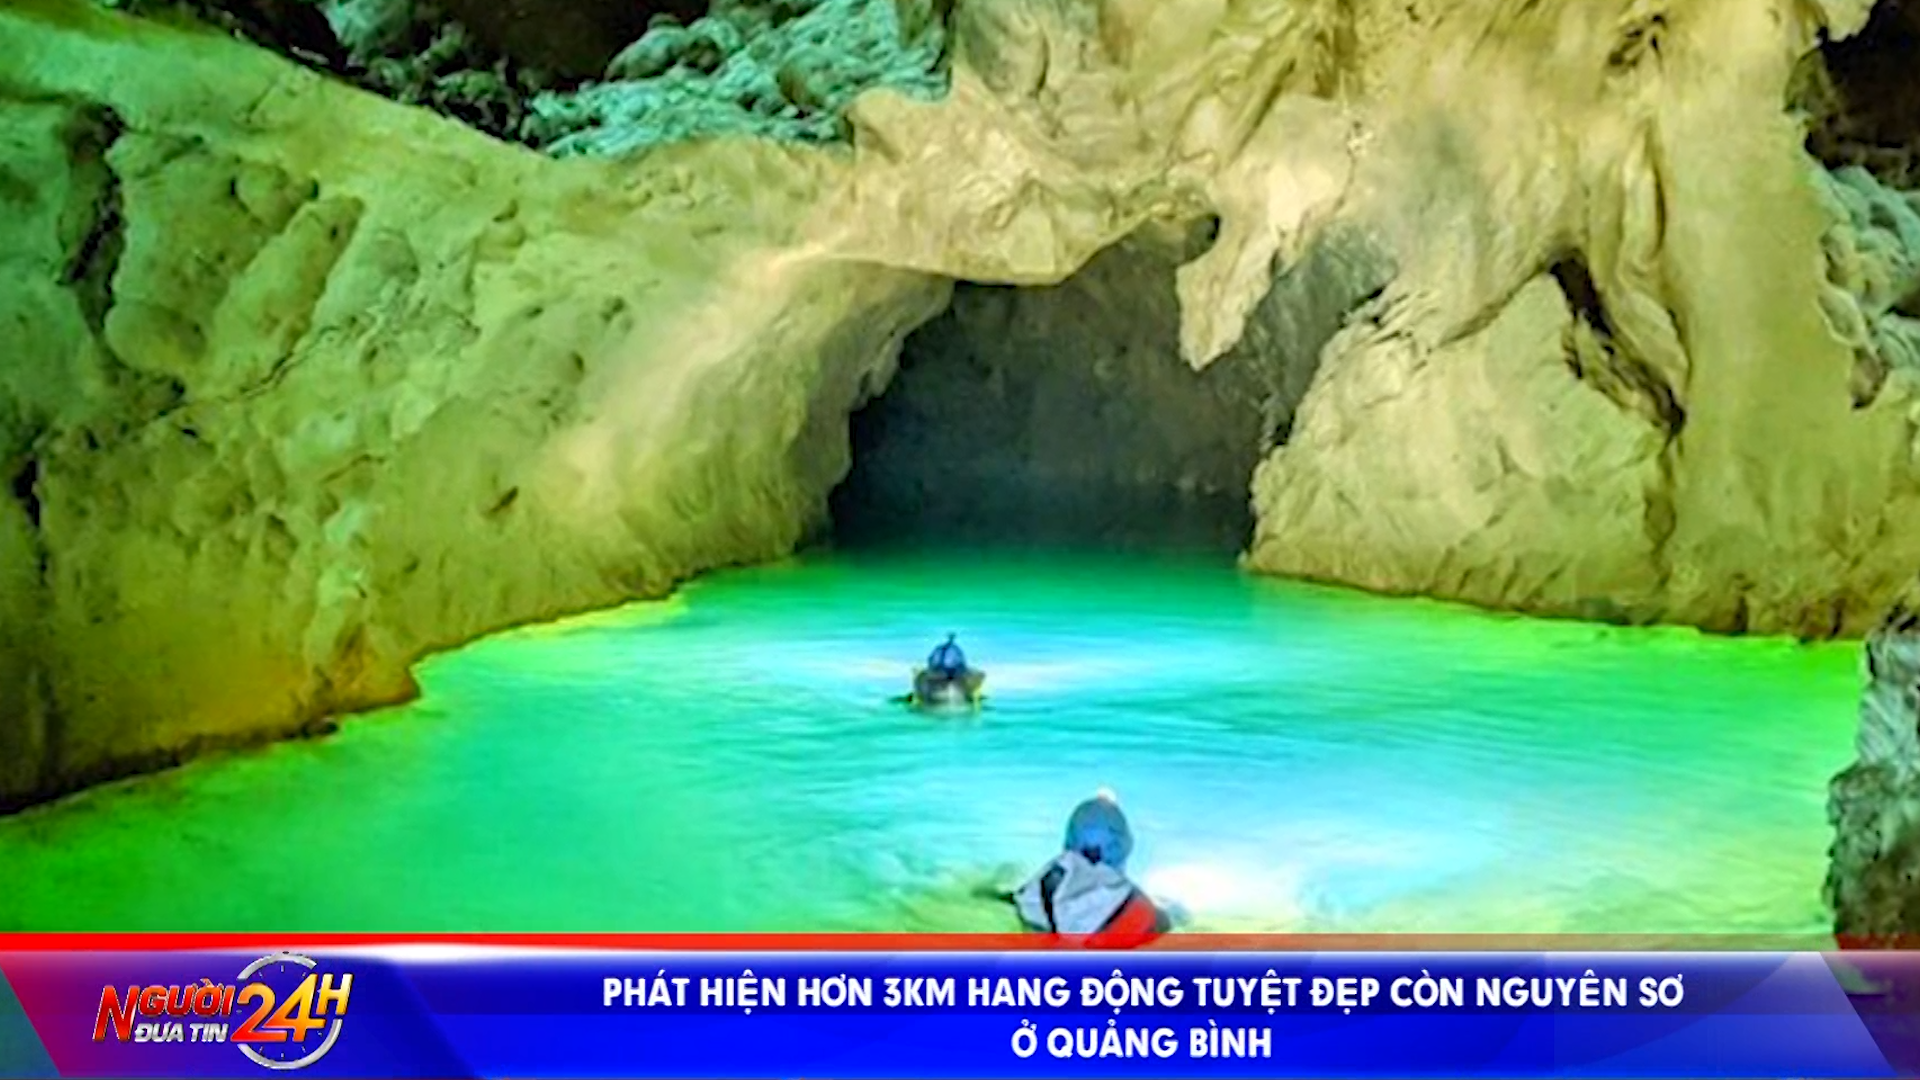 <strong>Phát hiện hơn 3km hang động tuyệt đẹp còn nguyên sơ ở Quảng Bình</strong>